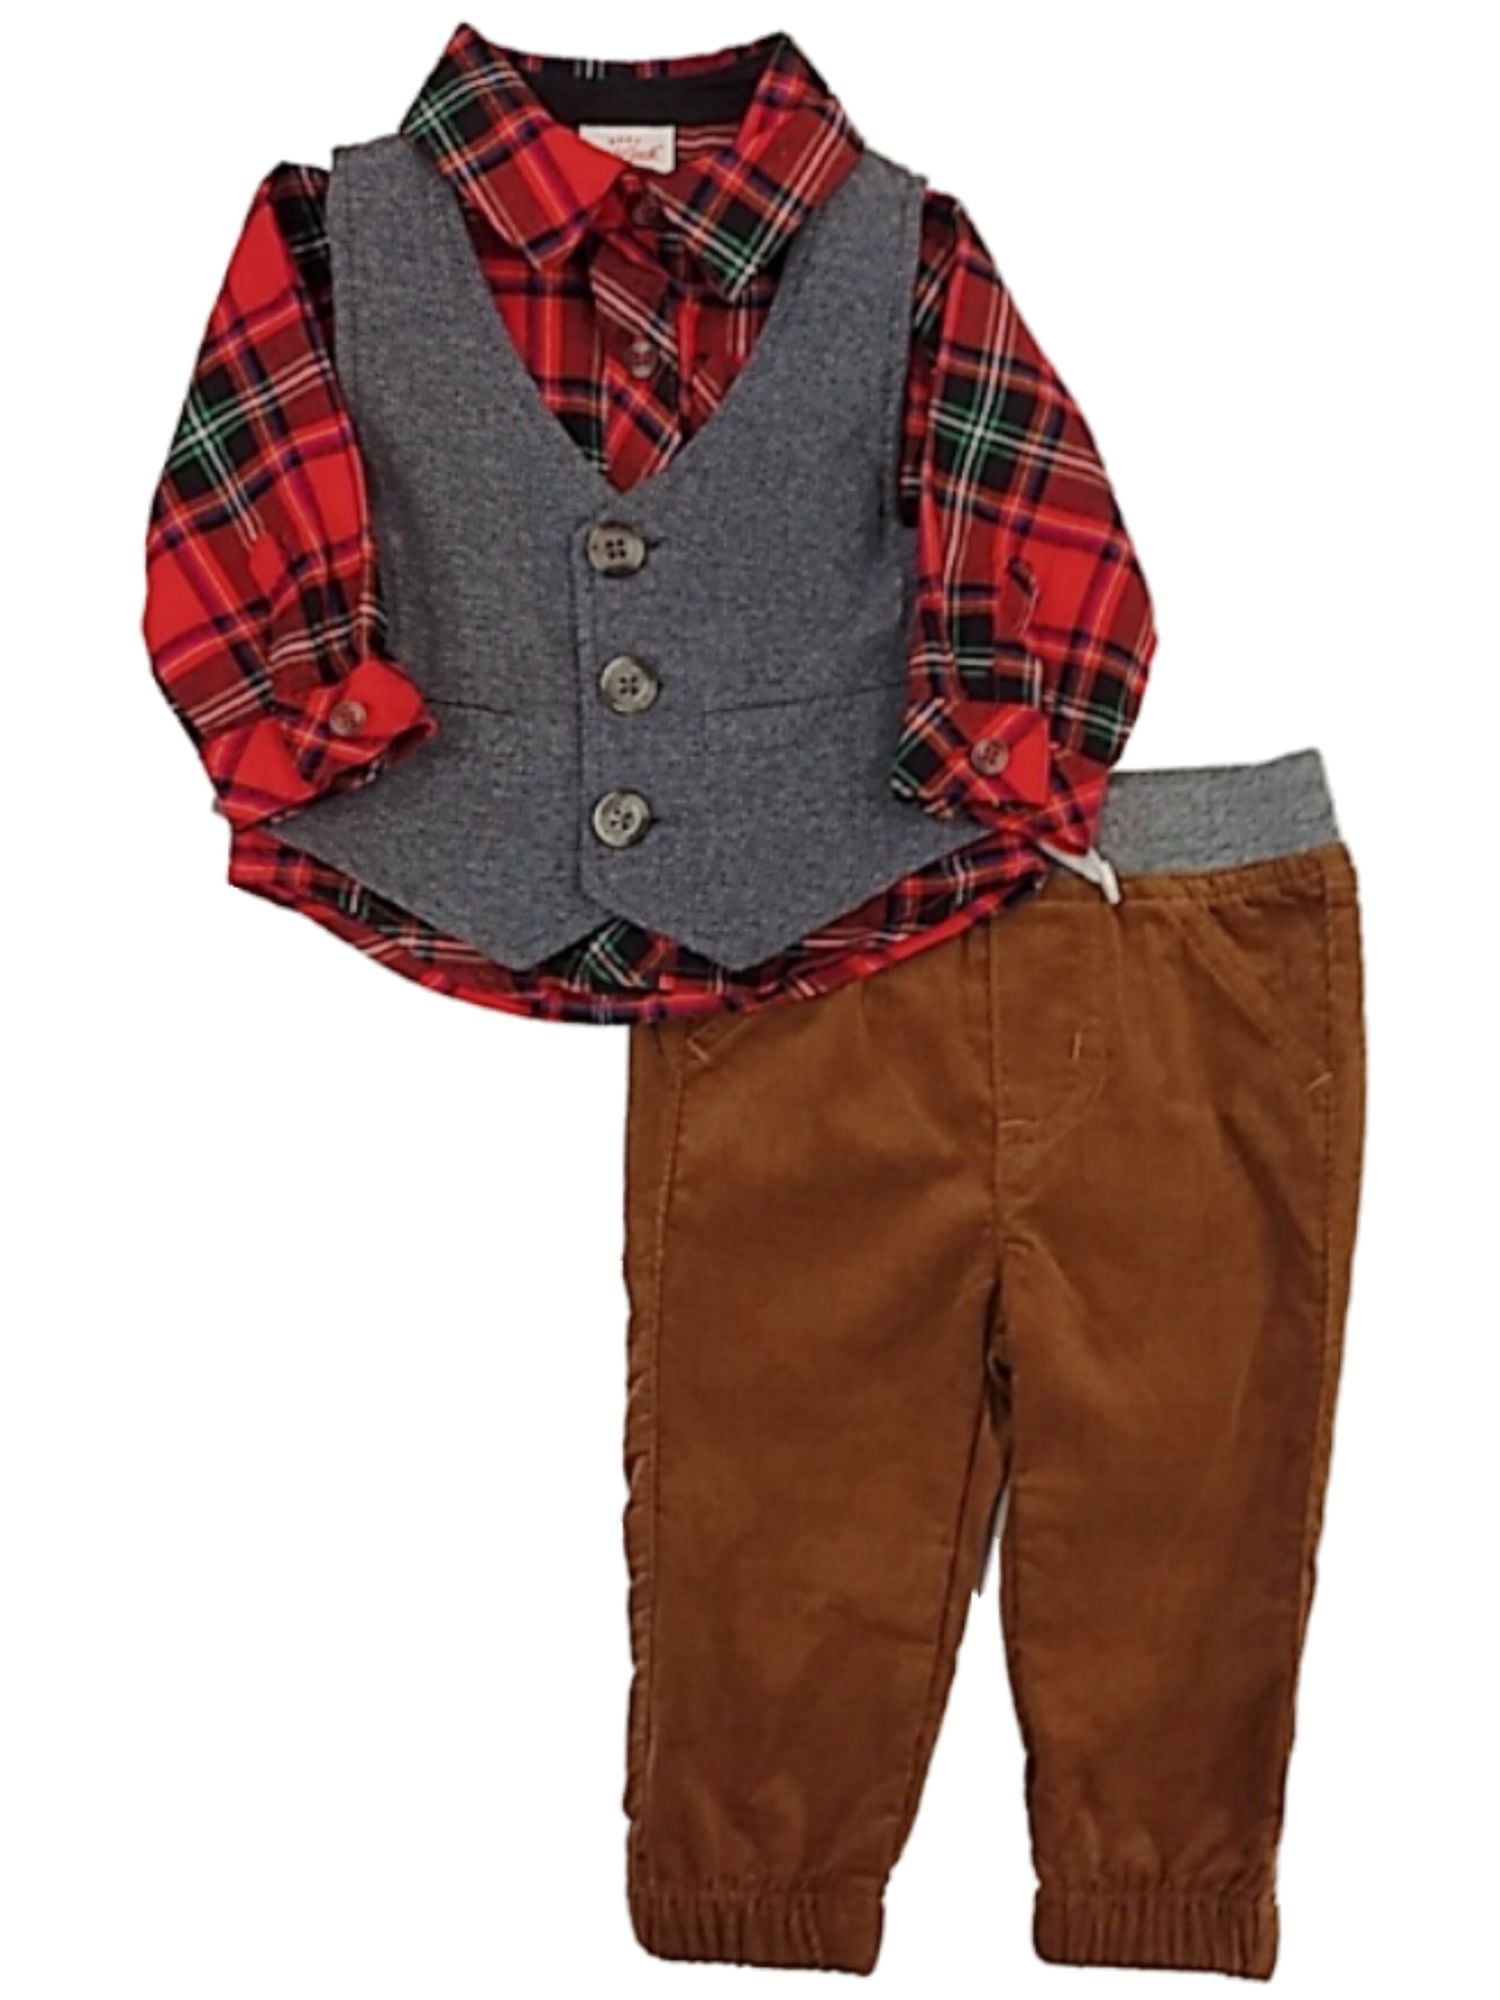 Toddler Boys IZOD $50 4pc Khaki & Plaid Vest Suit Size 3T 